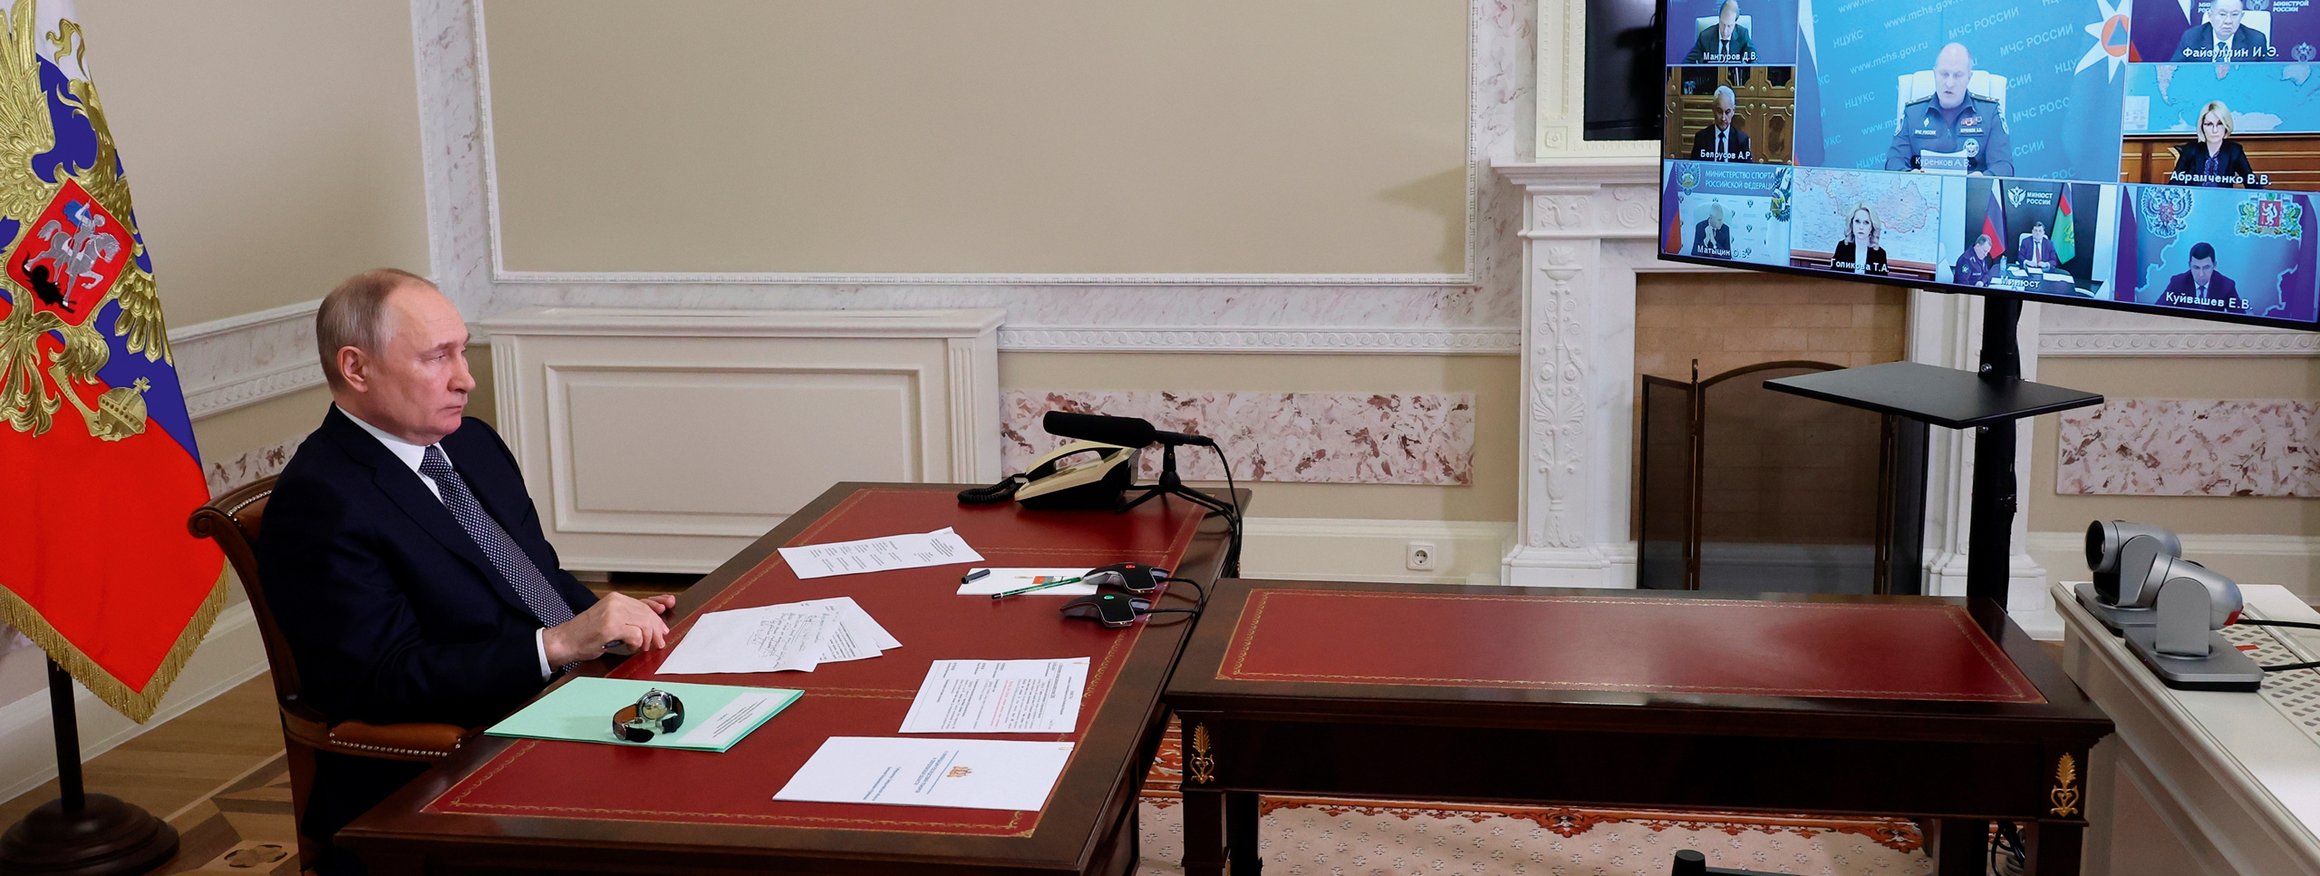 Wladimir Putin sitzt an seinem Regierungstisch  mit Papieren vor der russischen Fahne